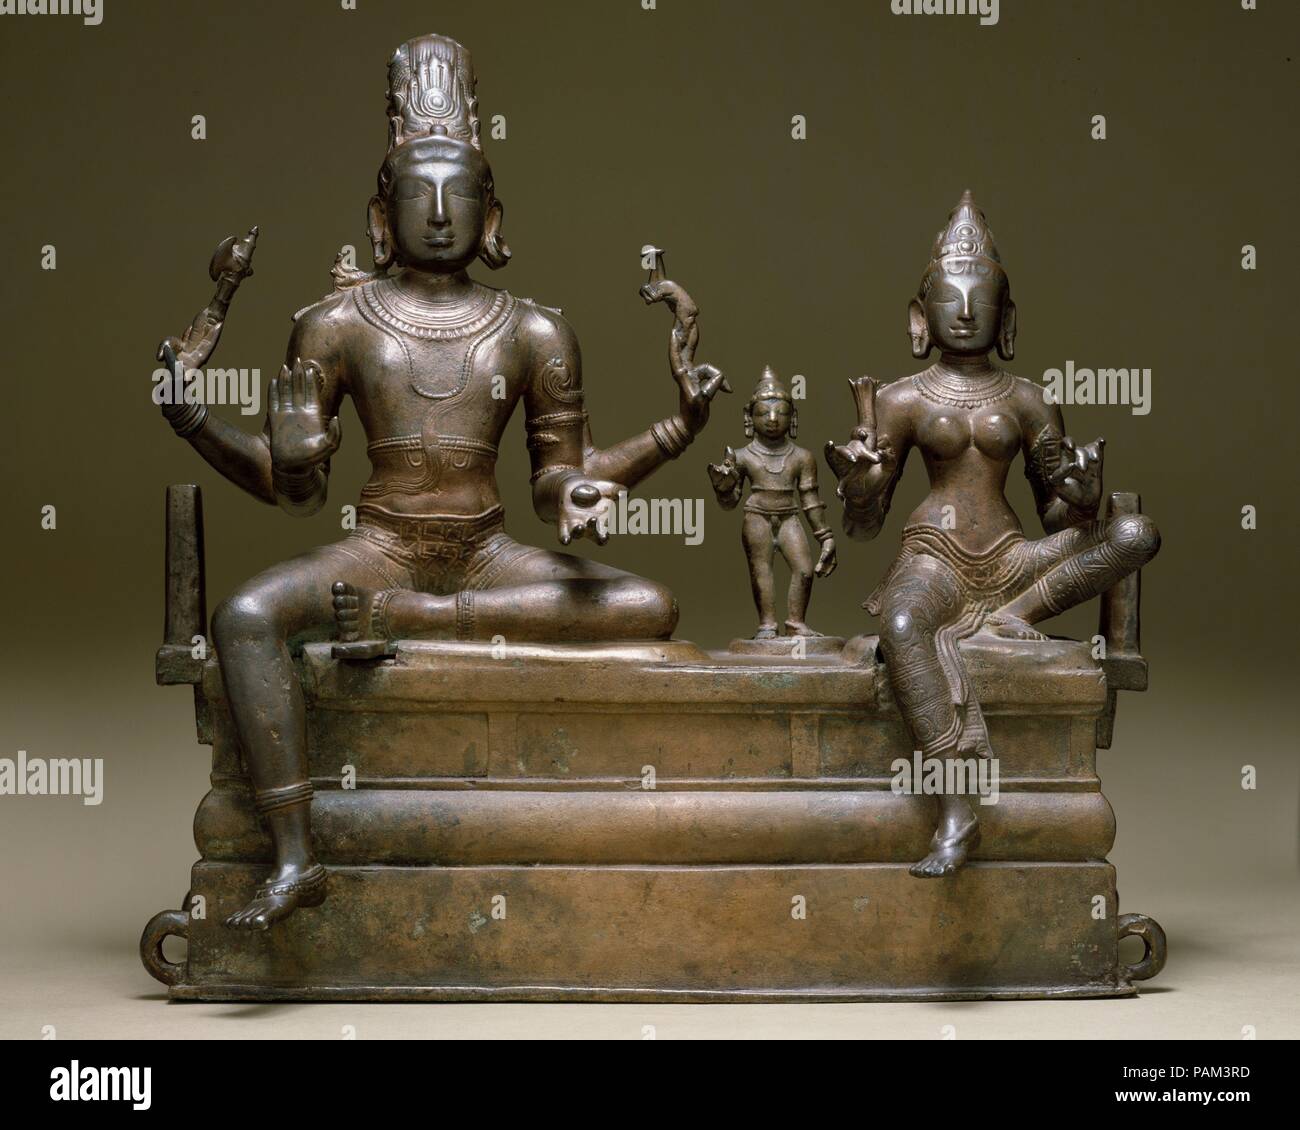 Shiva, Uma e il loro figlio Skanda (Somaskandamurti). Cultura: India (Tamil Nadu). Dimensioni: H. 29 7/8 in. (53 cm); W. 21 7/8 in. (55,6 cm); D. 10 1/4 in. (26,2 cm). Data: inizio del XI secolo. Somaskandamurti è uno dei più popolari di immagini religiose in India del Sud. I quattro armati di Shiva detiene una battaglia-ax e un cervo nella sua mano superiore e un cedro in suo inferiore sinistra. Il suo destro inferiore viene sollevata in abhayamudra (il gesto che risponde paura). La sua consorte, Parvati, fermagli un giglio di acqua nella sua mano destra. Tra di essi si erge Skanda, il loro figlio bambino, bejeweled e con una Lotus nel suo diritto Foto Stock